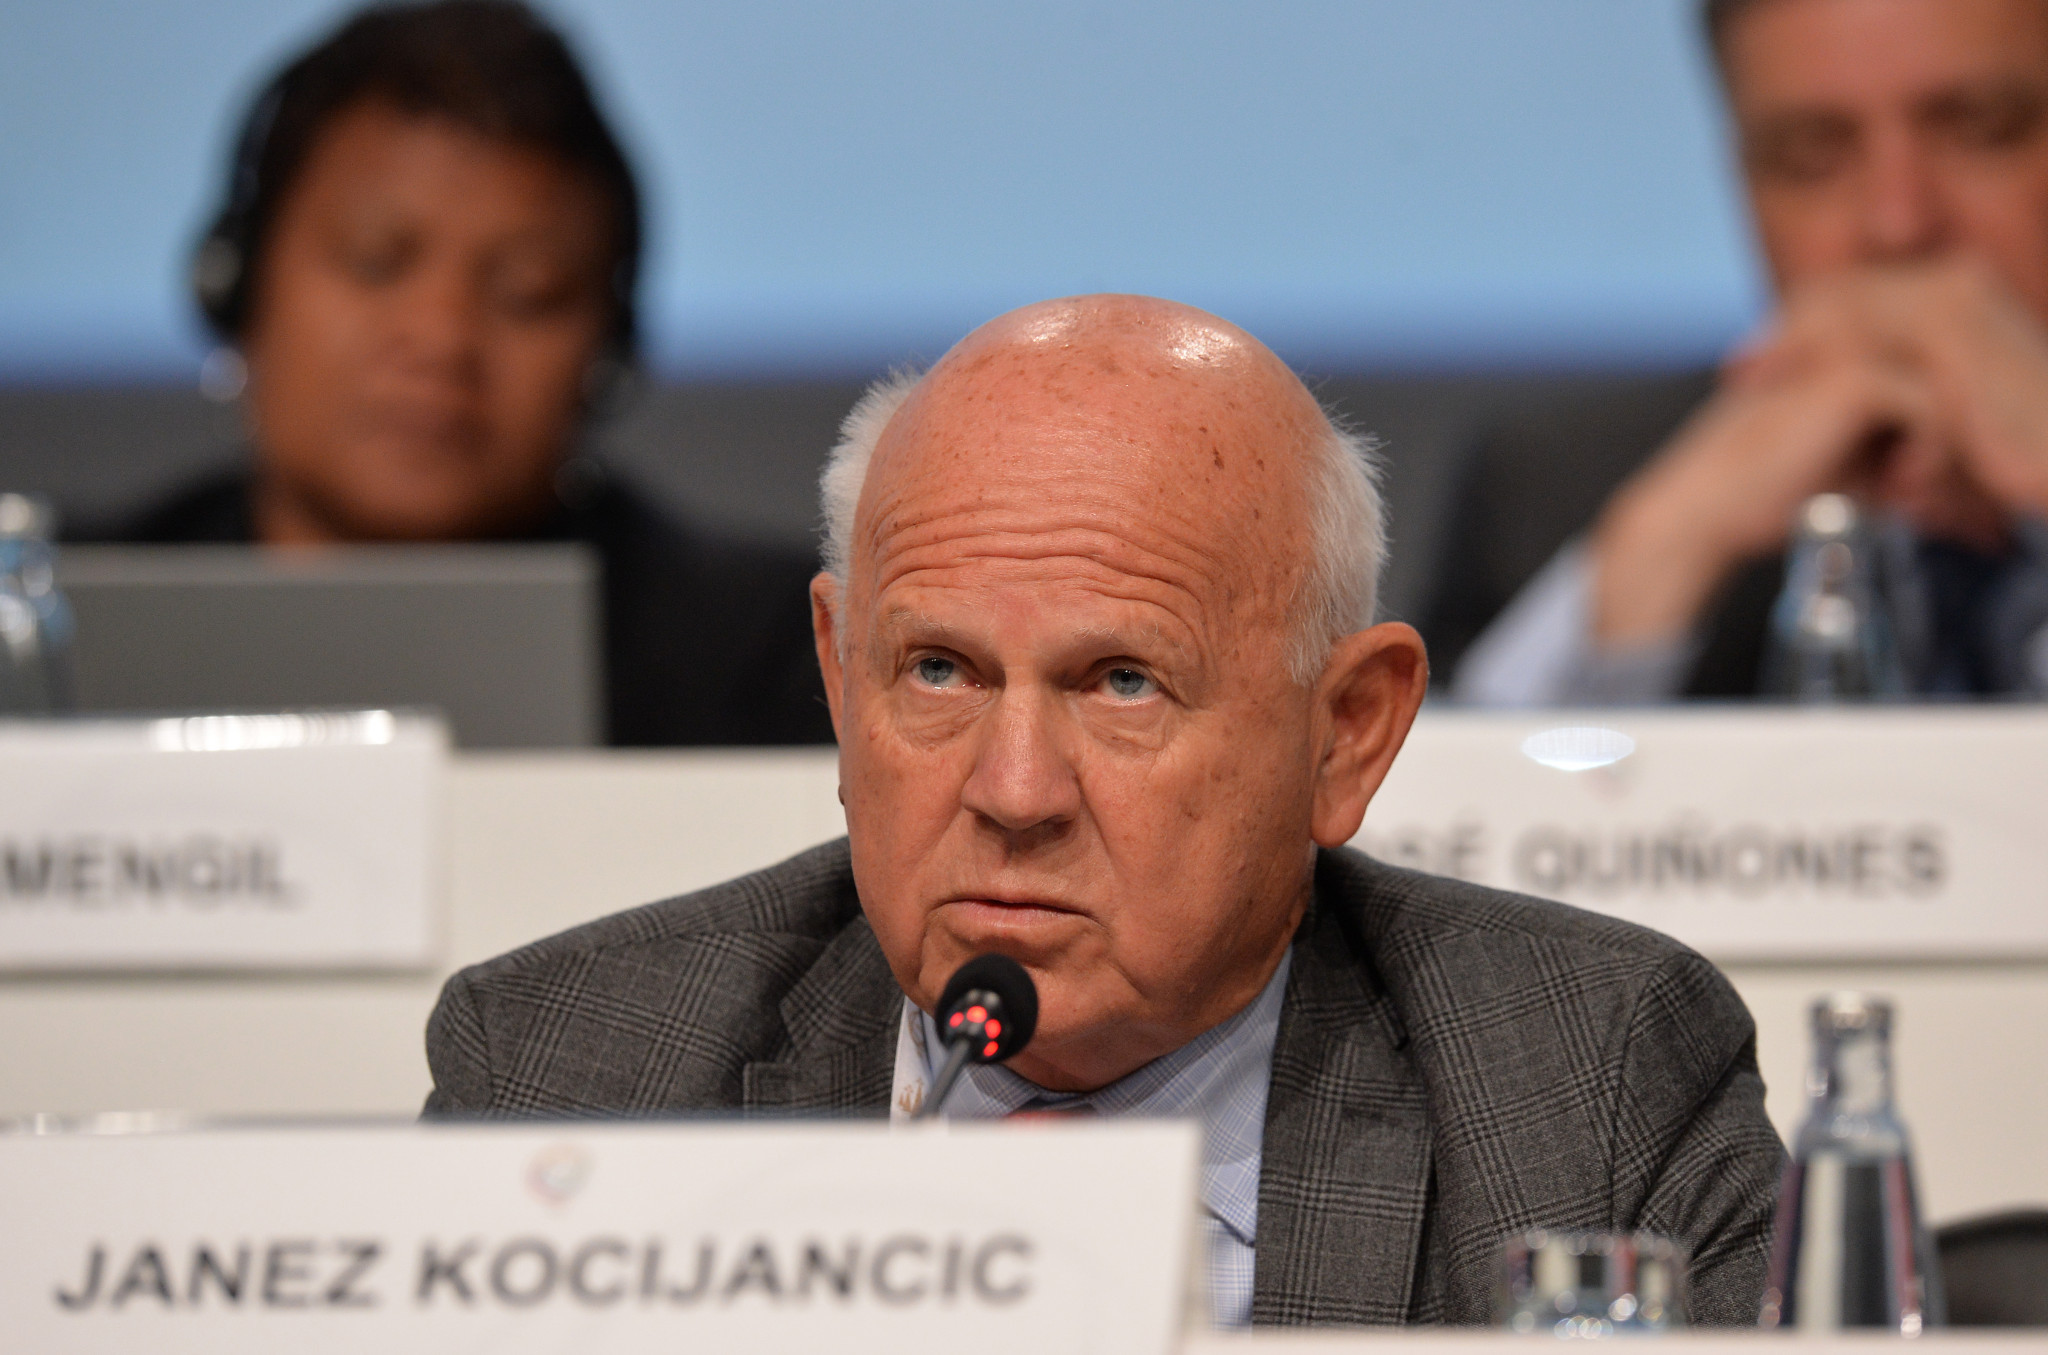 Kocijančič claims IOC reforms has "reinvigorated" interest in hosting Winter Olympics